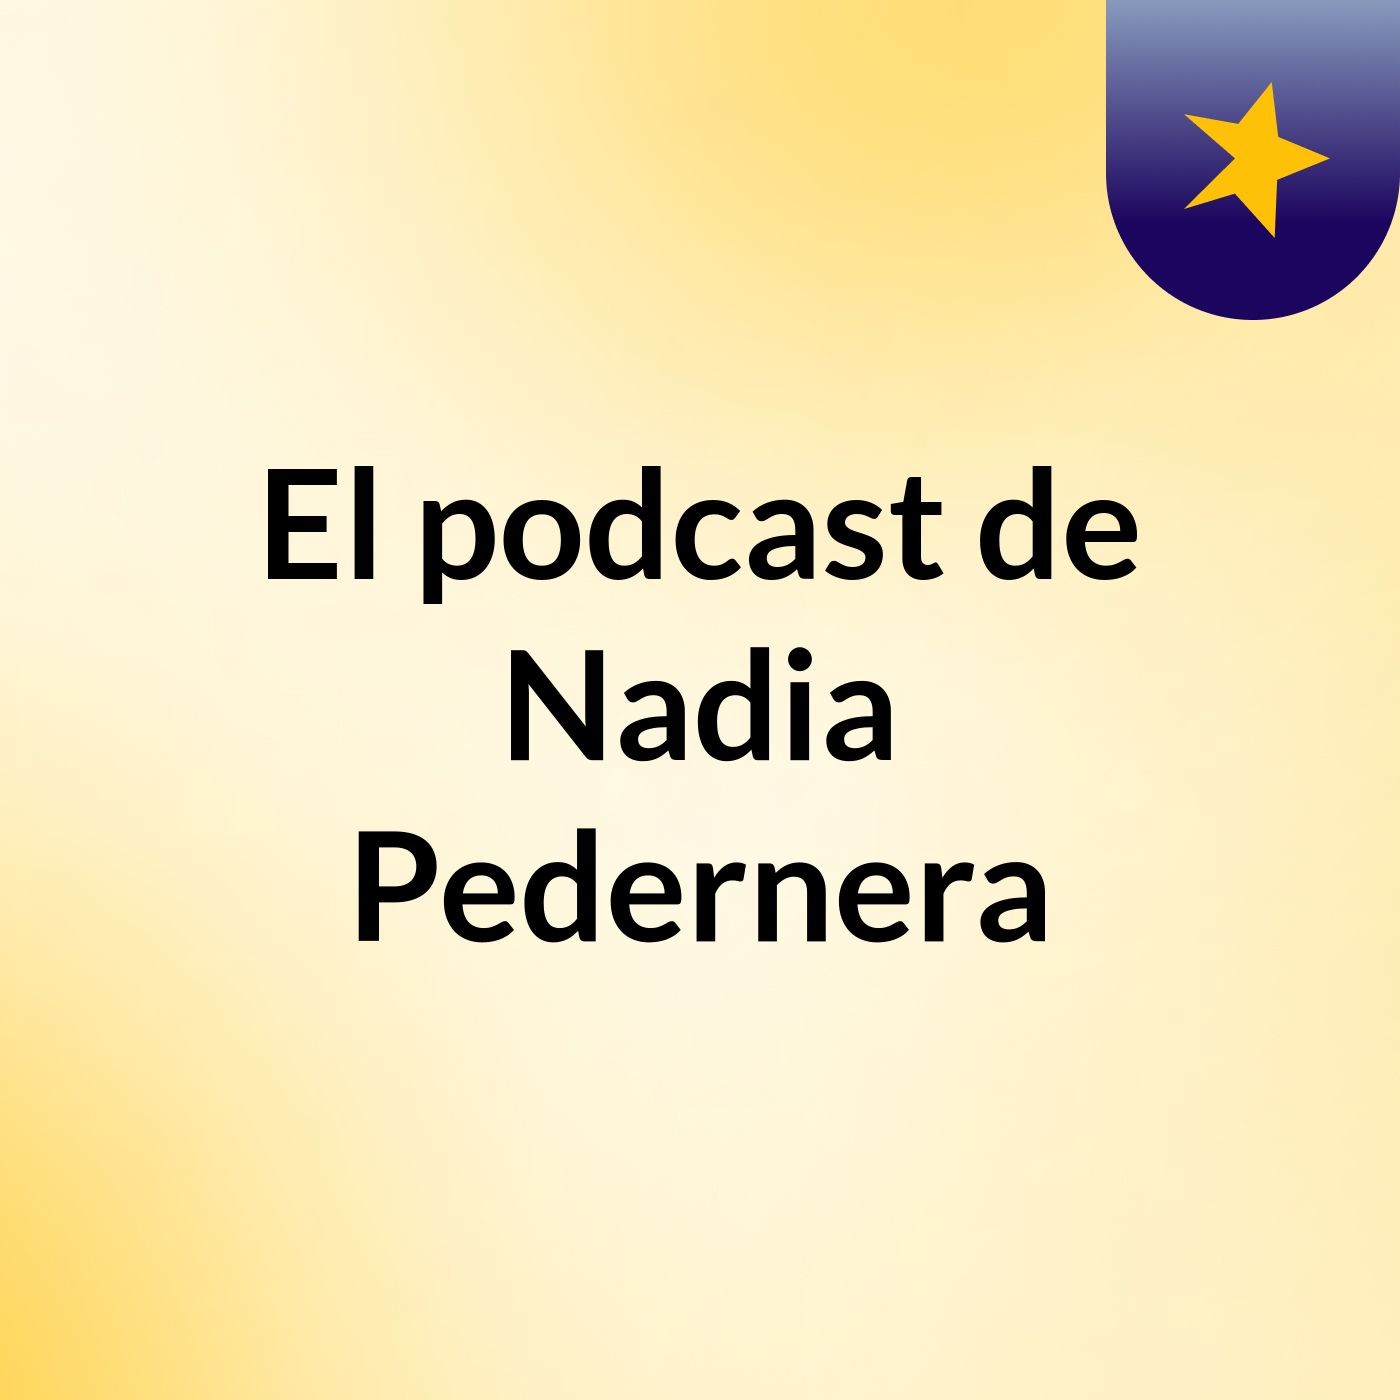 Episodio 28 - El podcast de Nadia Pedernera